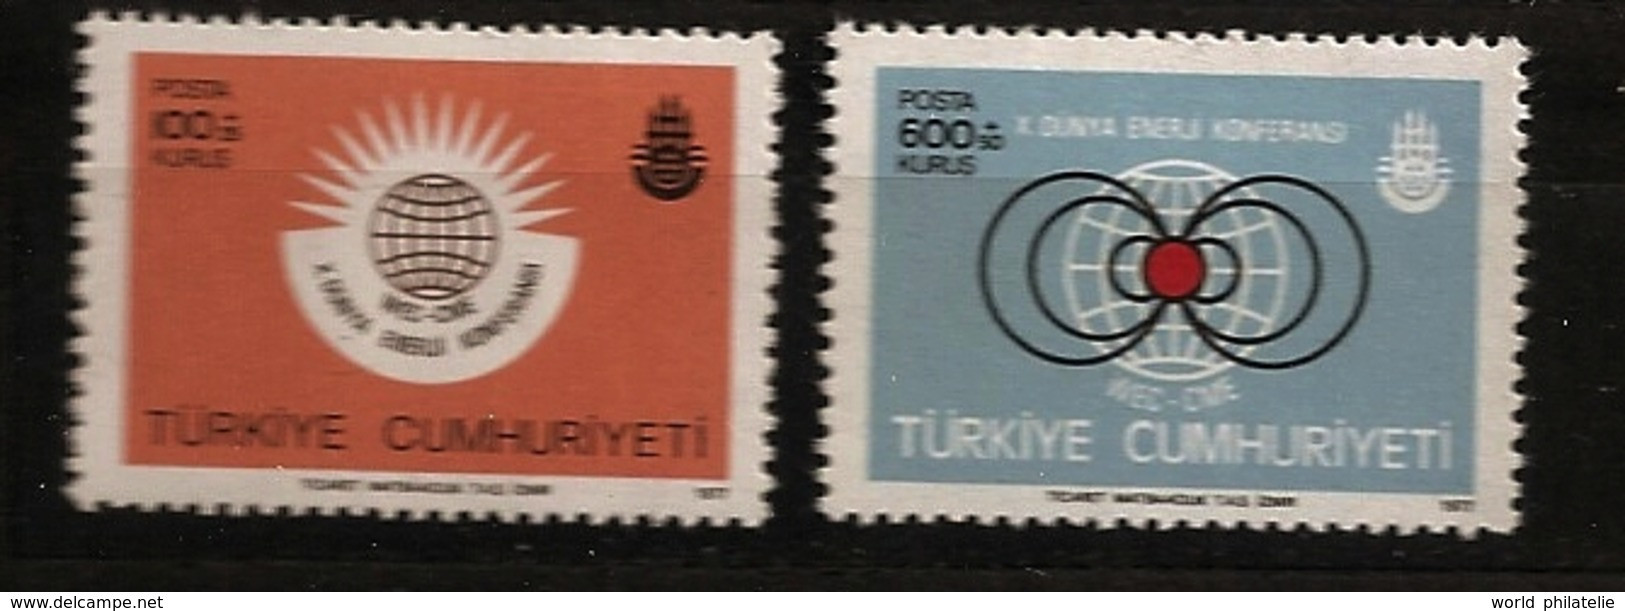 Turquie Türkiye 1977 N° 2198 / 9 ** Energie, Conférence Mondiale, Atome, Nucléaire, Gaz, Pétrole, Charbon, Electricité - Ungebraucht